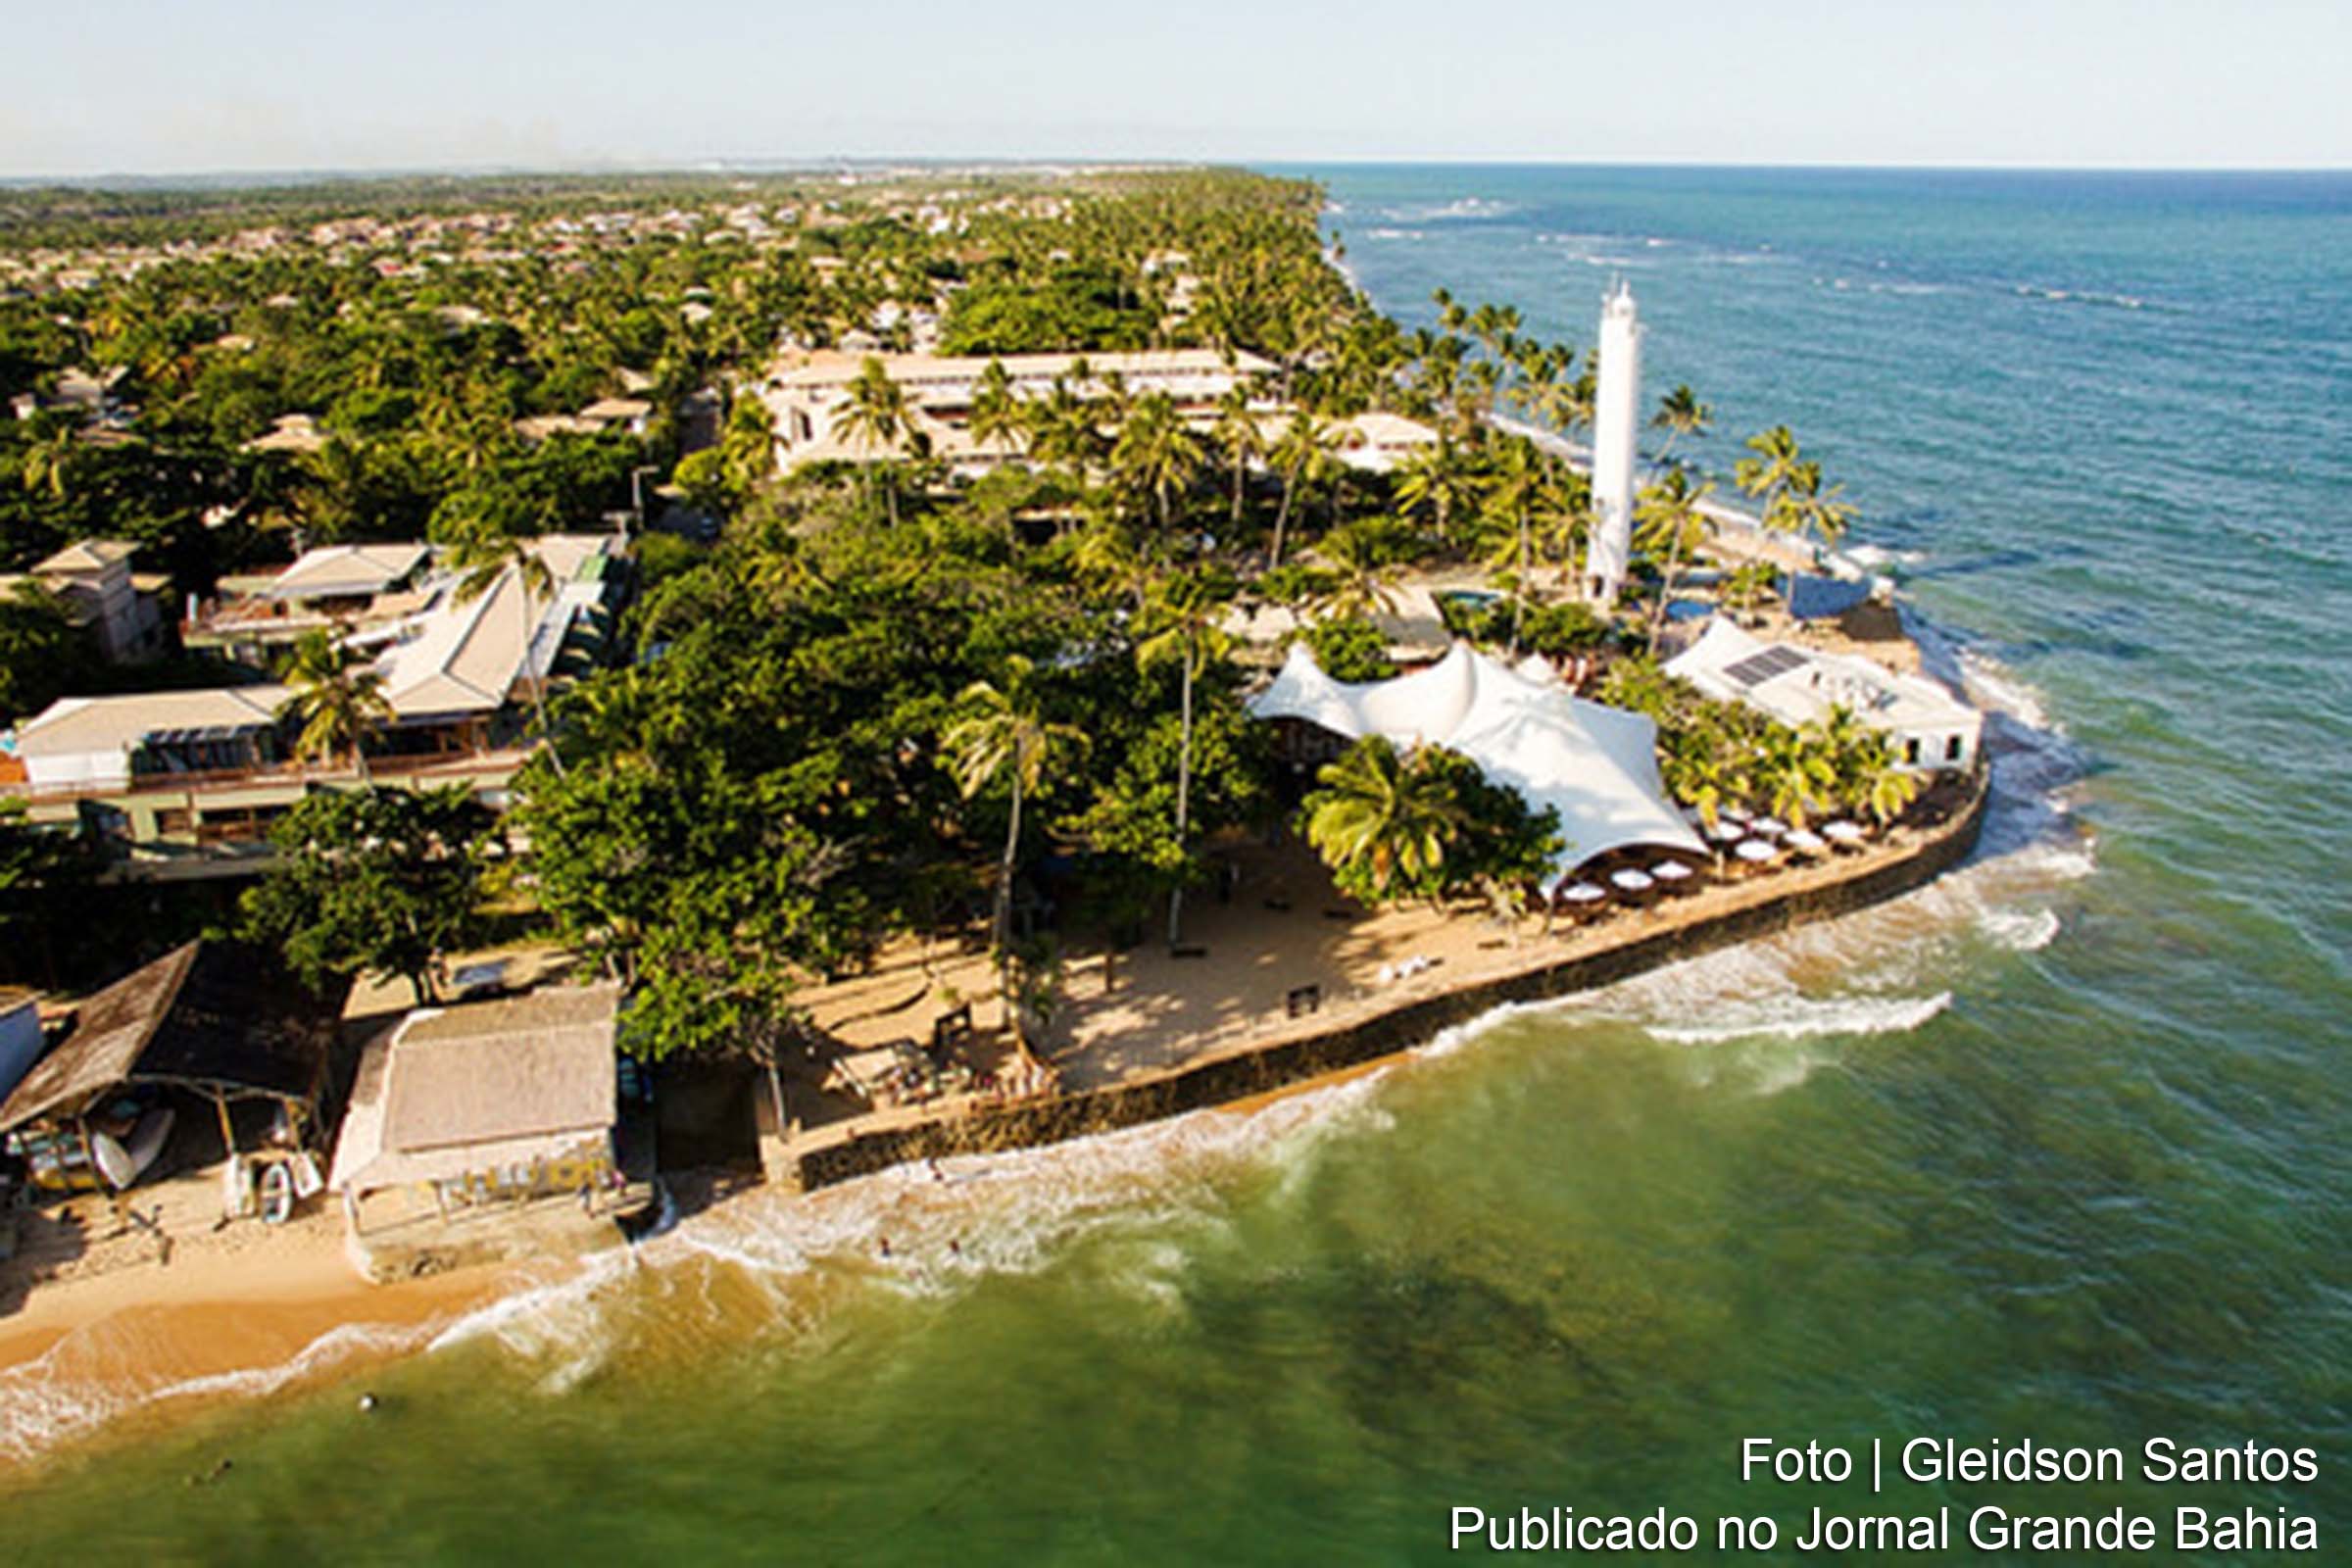 Vista aérea do Distrito de Praia do Forte, no município de Mata de São João.